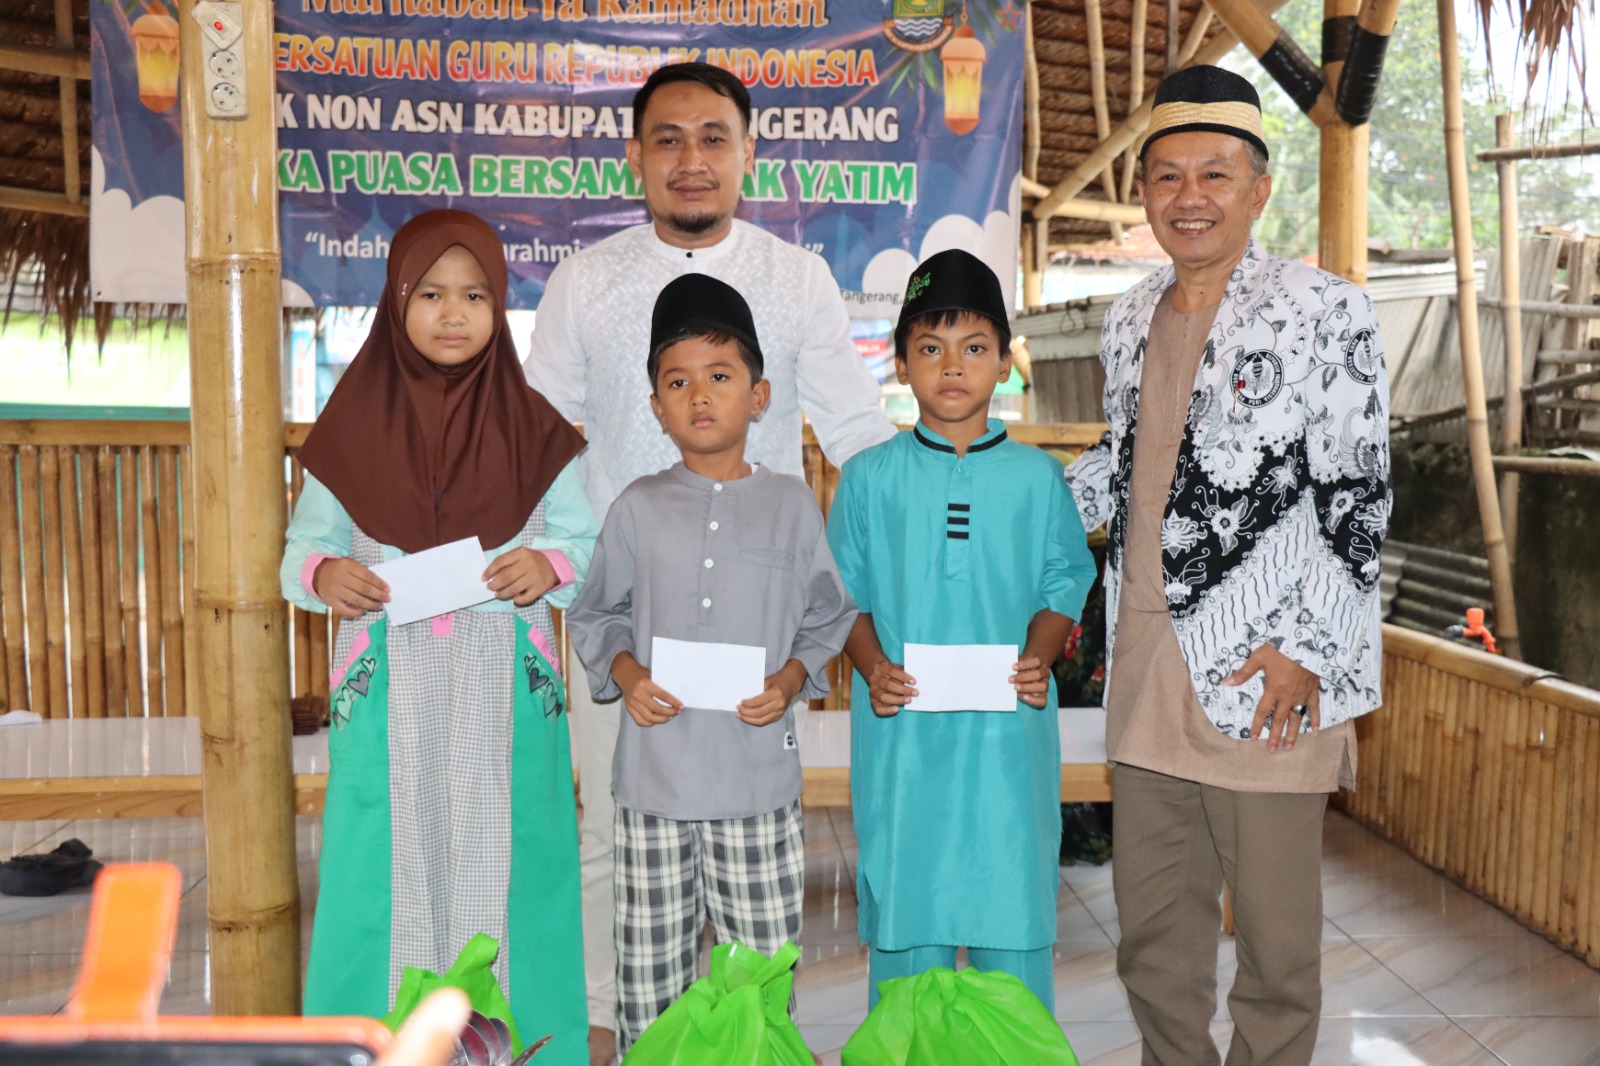 Persatuan Guru Republik Indonesia (PGRI) GTK Non ASN Kabupaten Tangerang Gelar Buka Puasa Bersama Anak Yatim